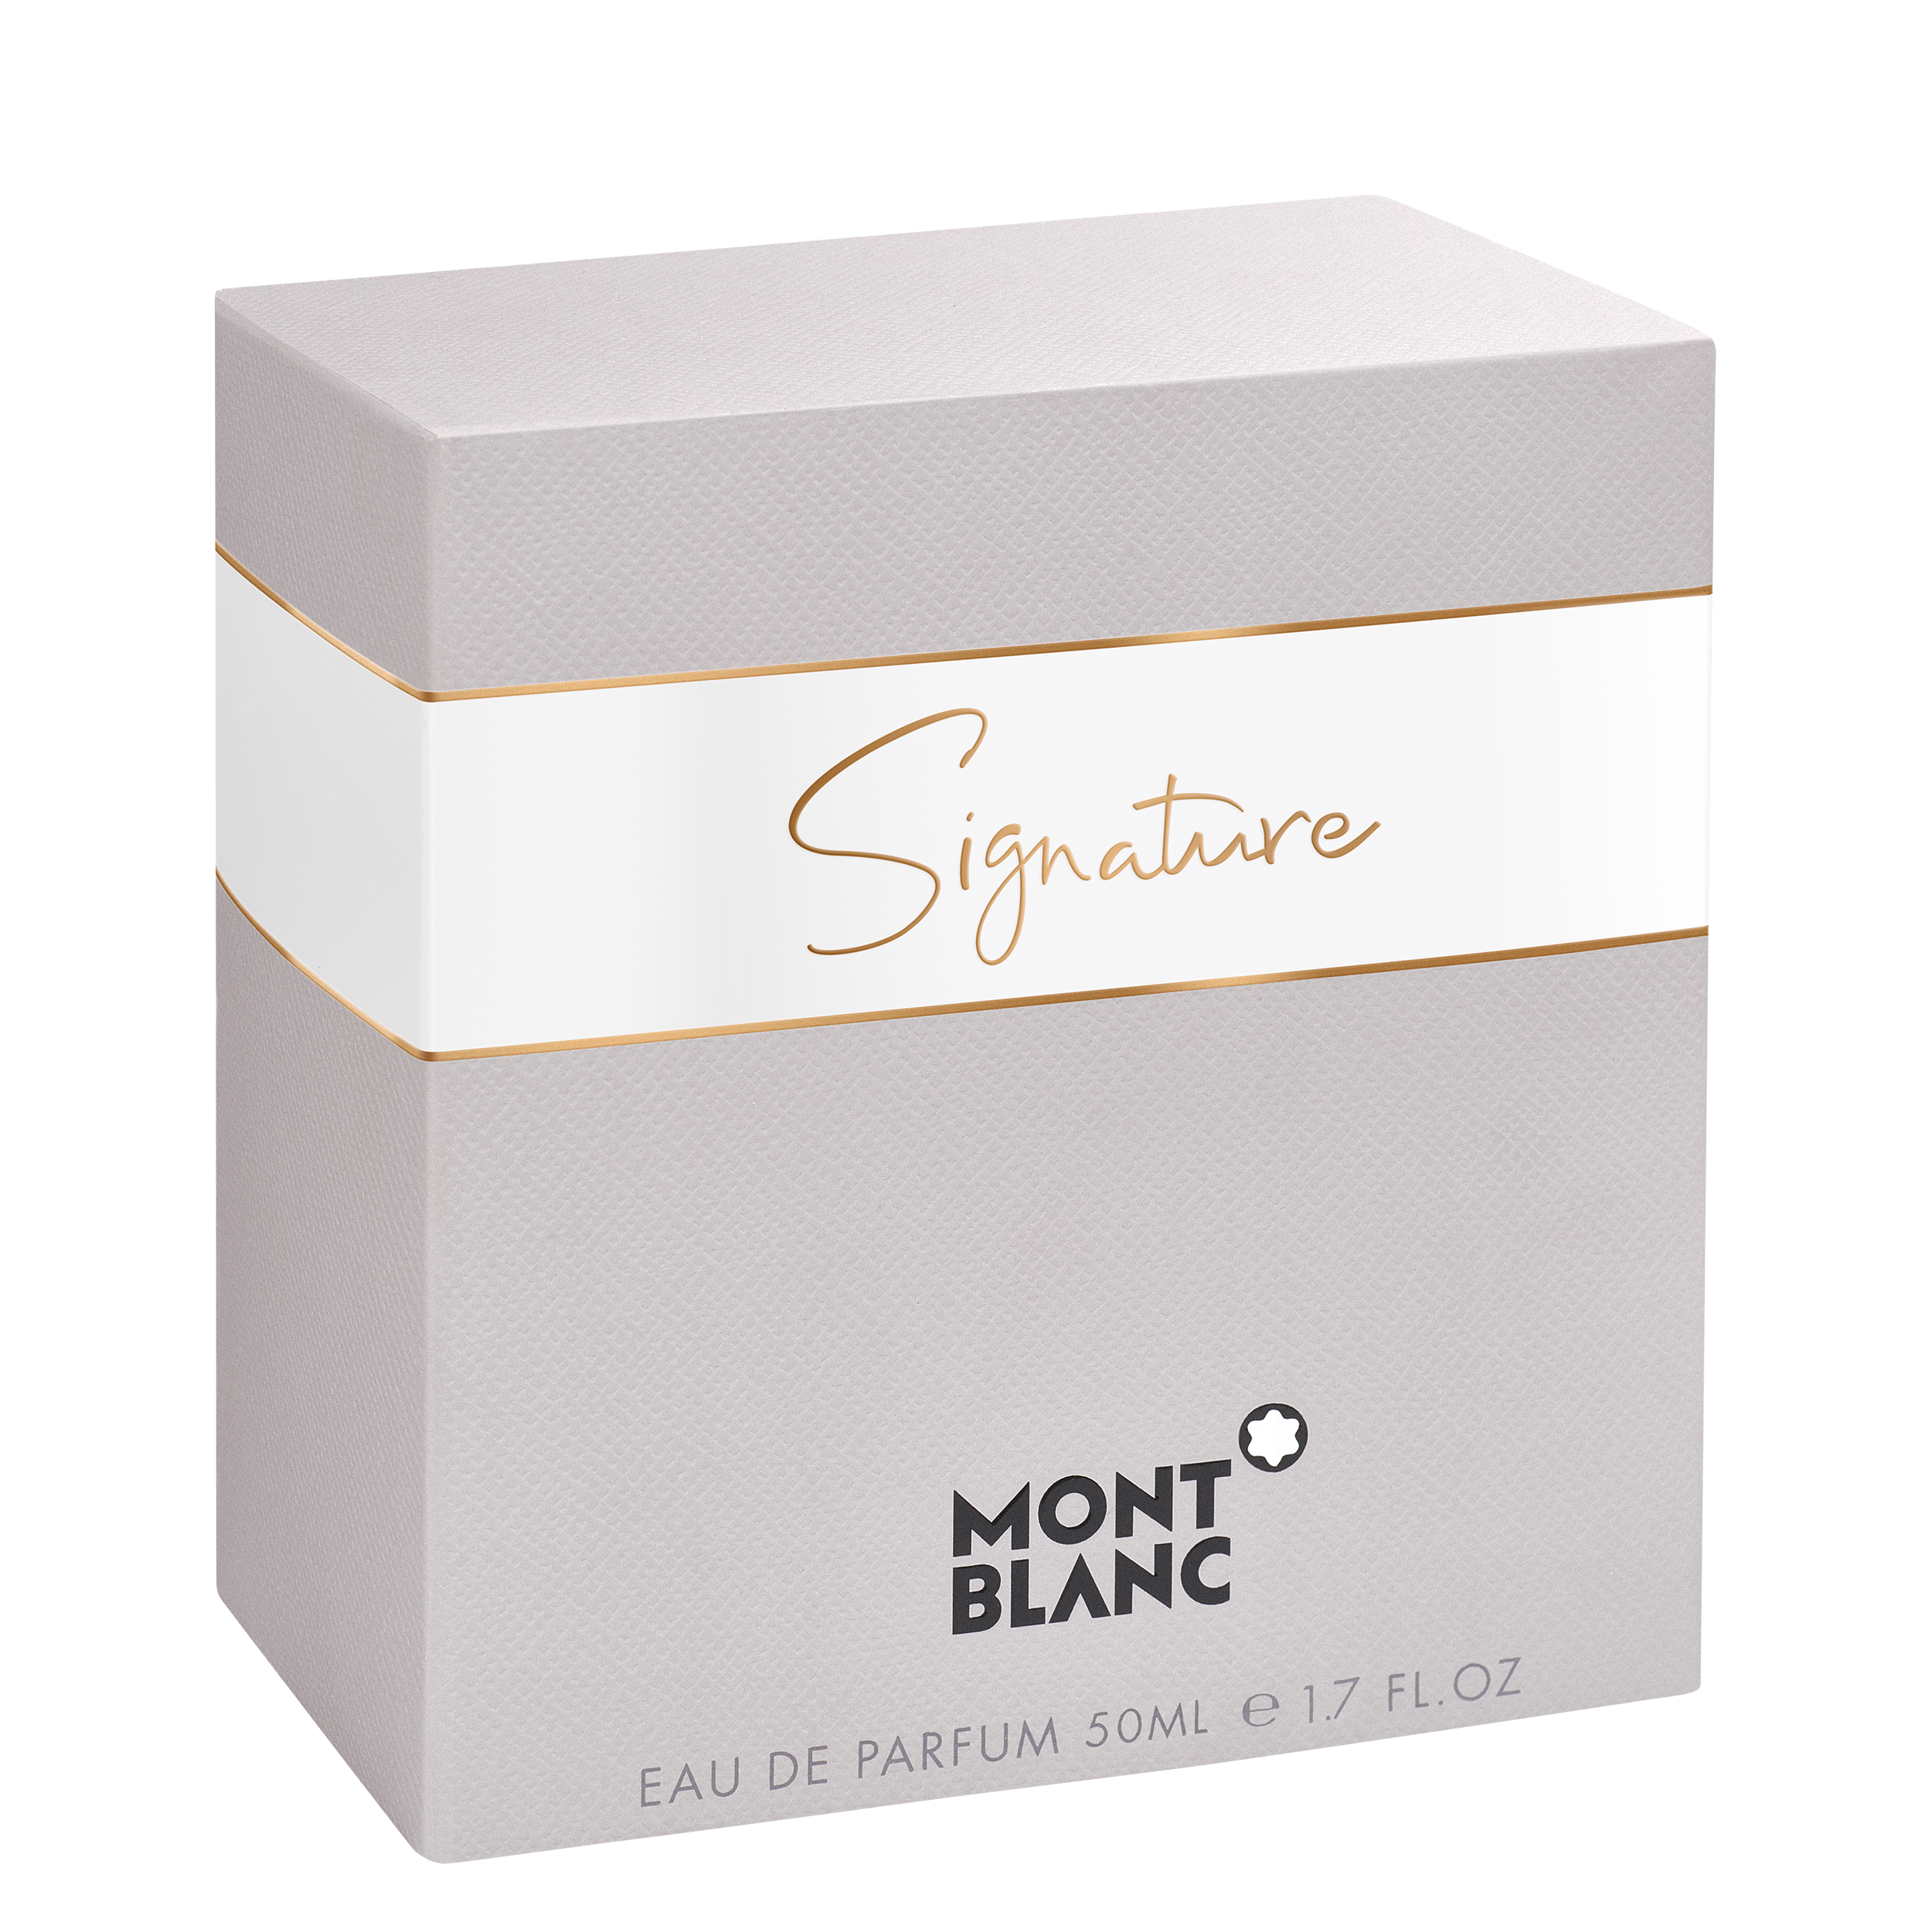 Montblanc Signature 50 ml, image 2